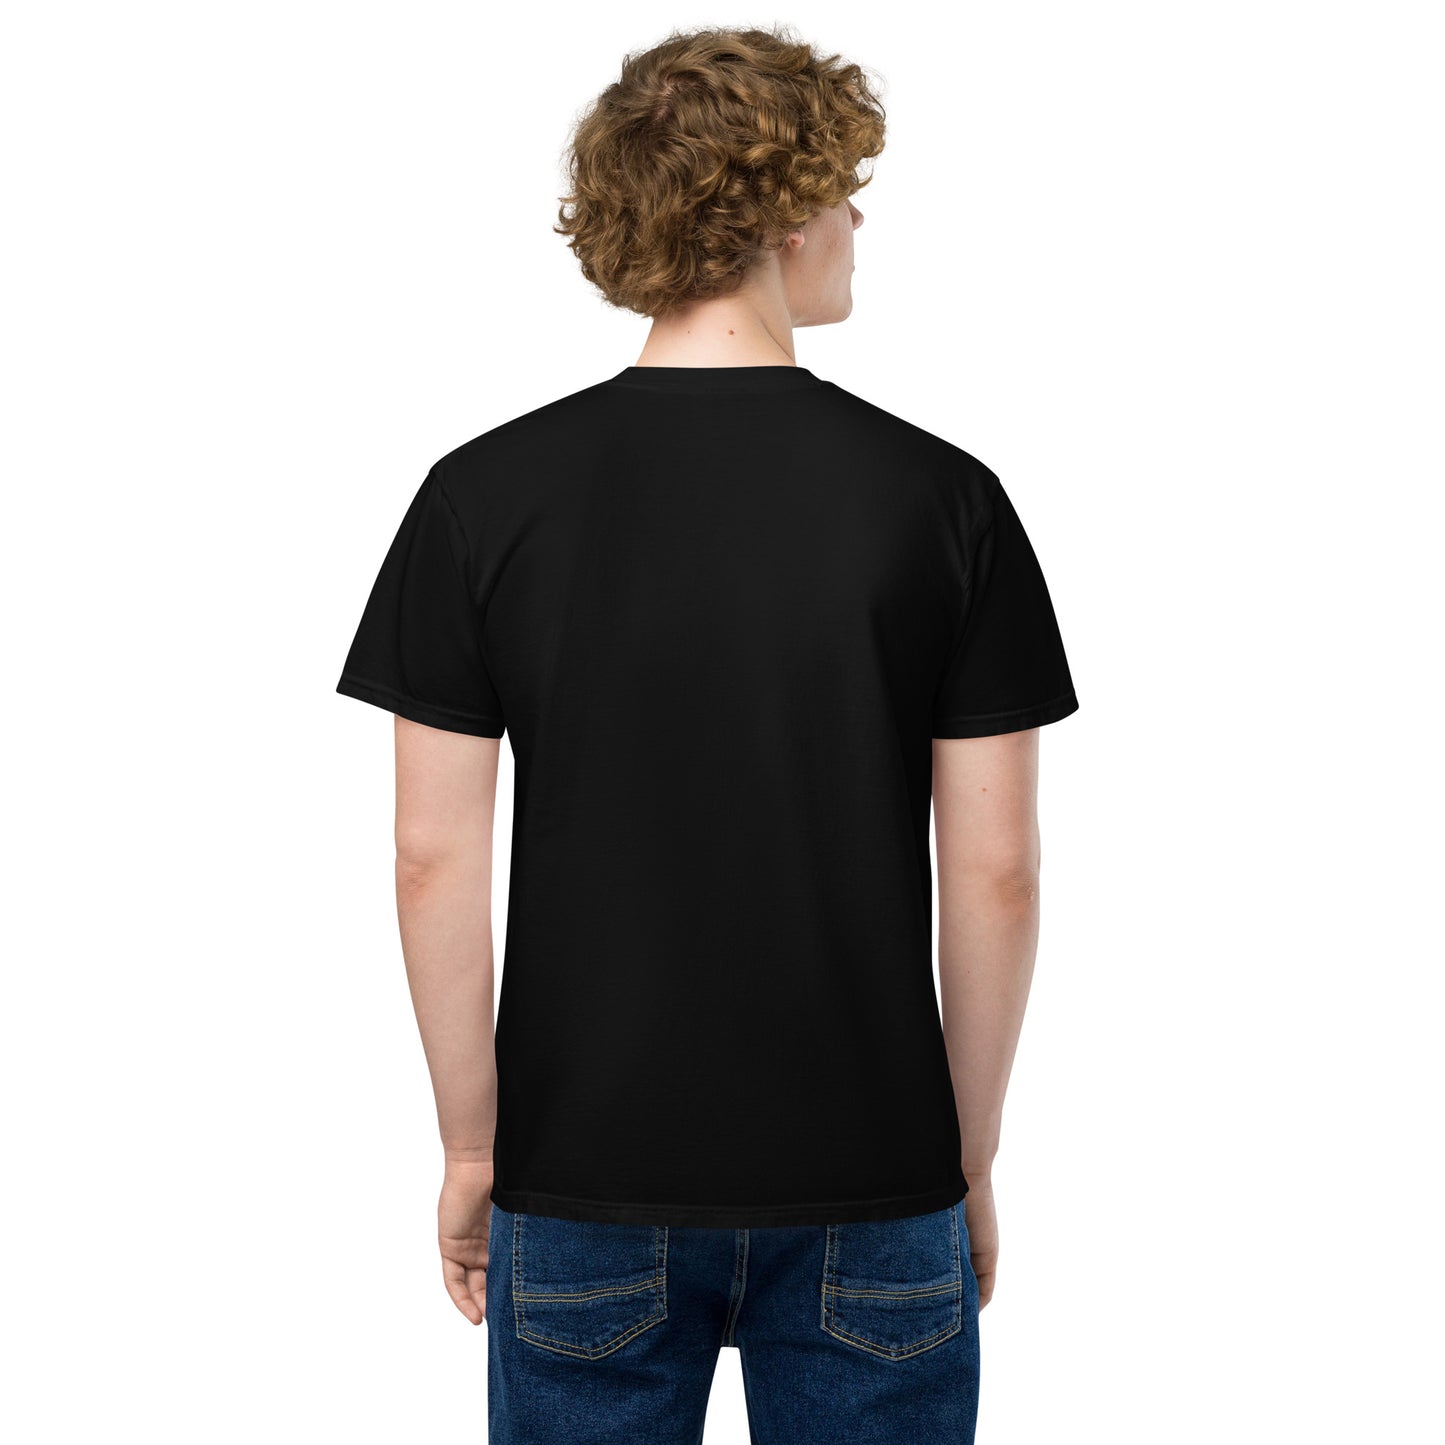 Sea Zephyr unisex garment-dyed pocket t-shirt - black